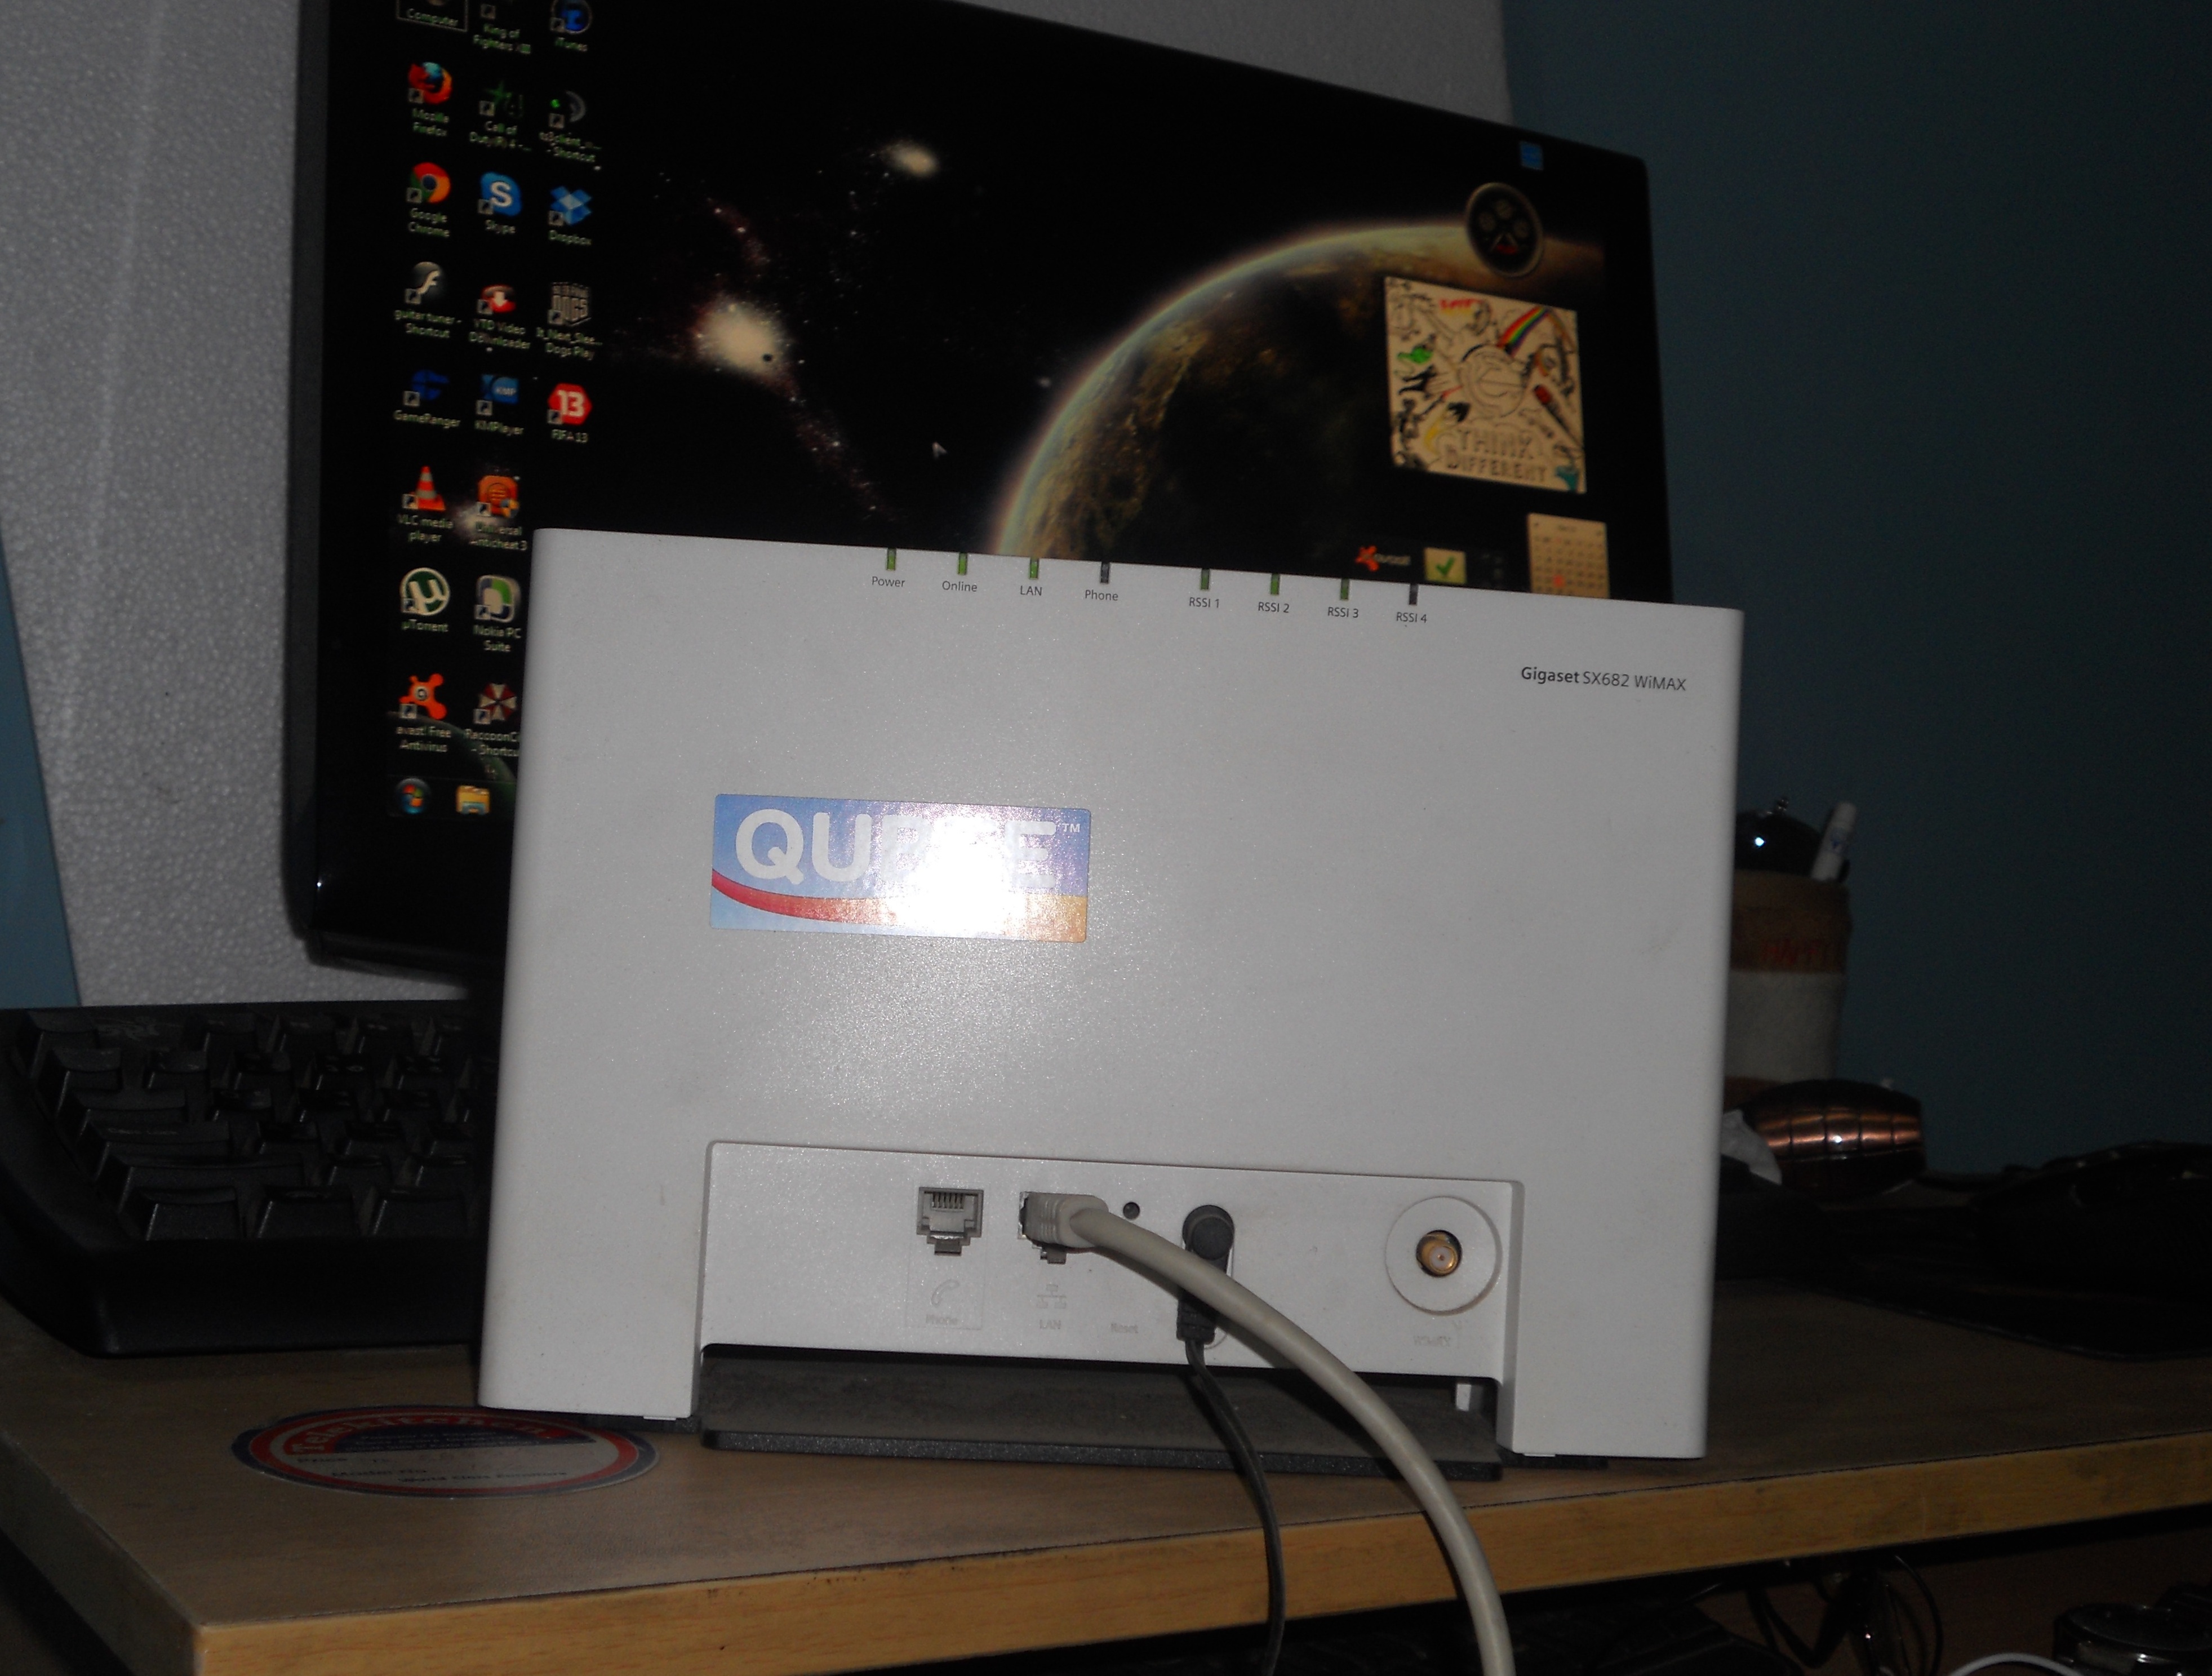 Qubee gigaset modem large image 0